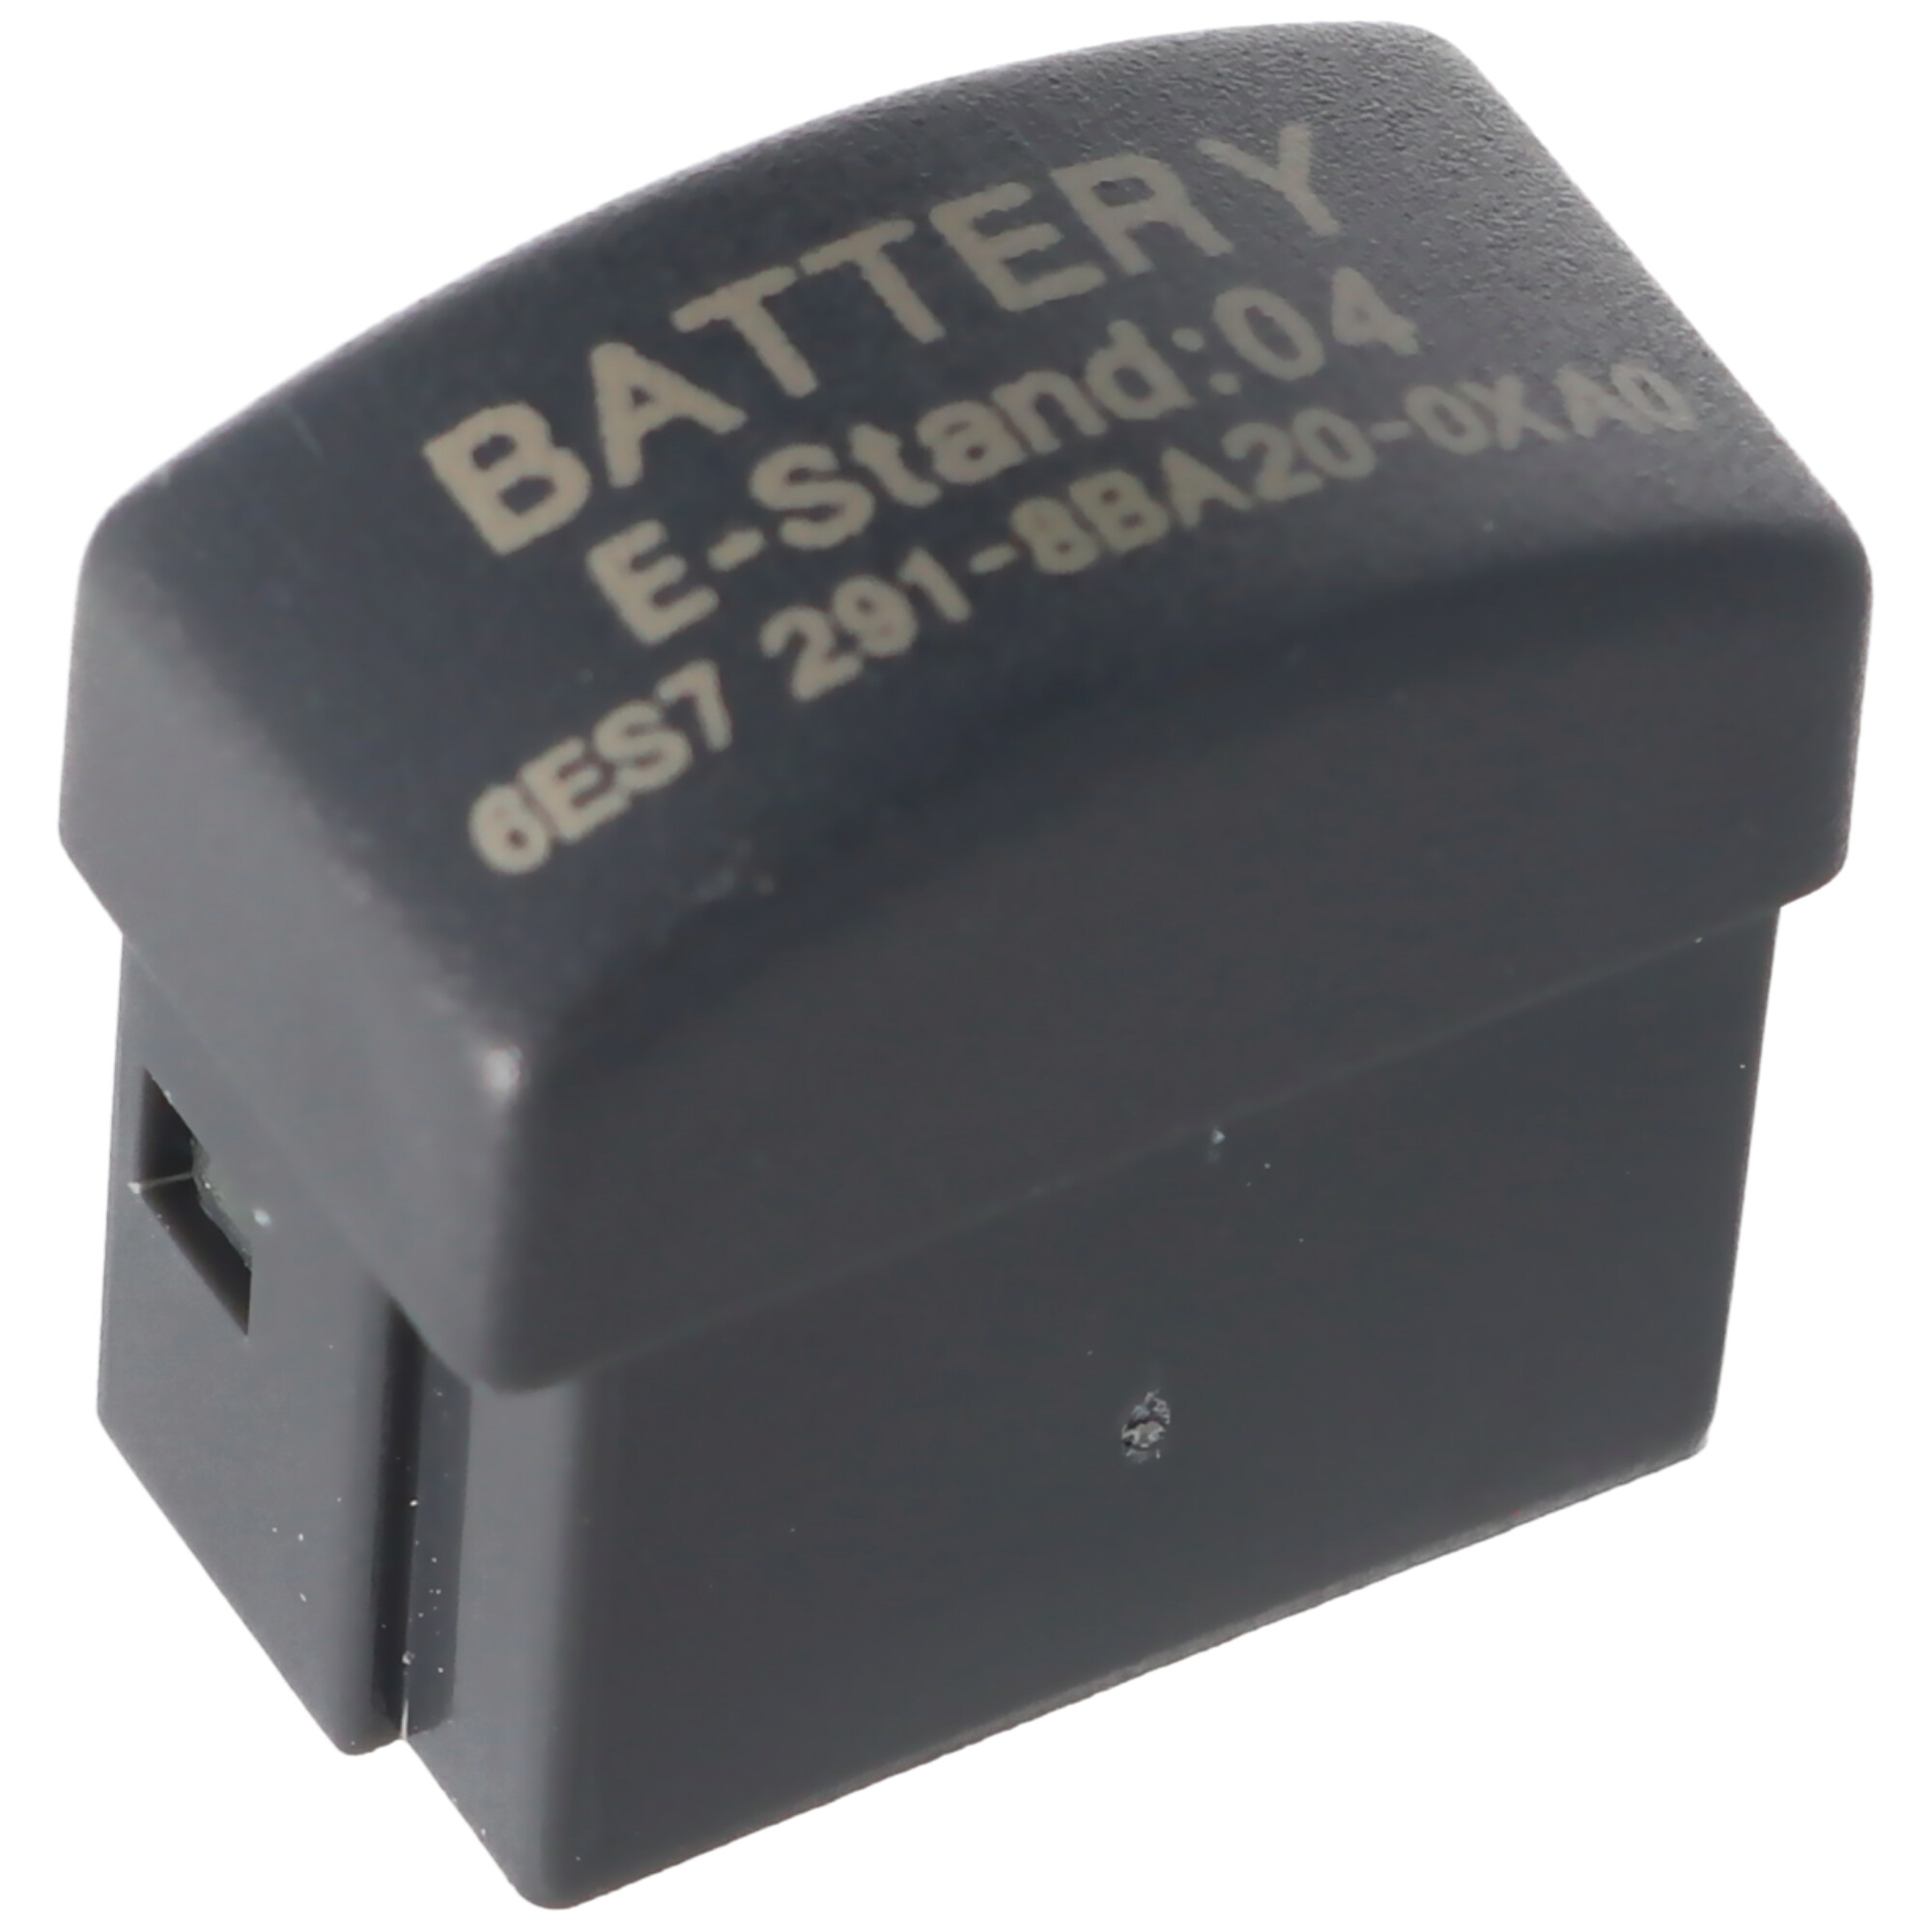 Speicherbatterie passend für Siemens 6ES7291-8BA20-0XA0 Batterie